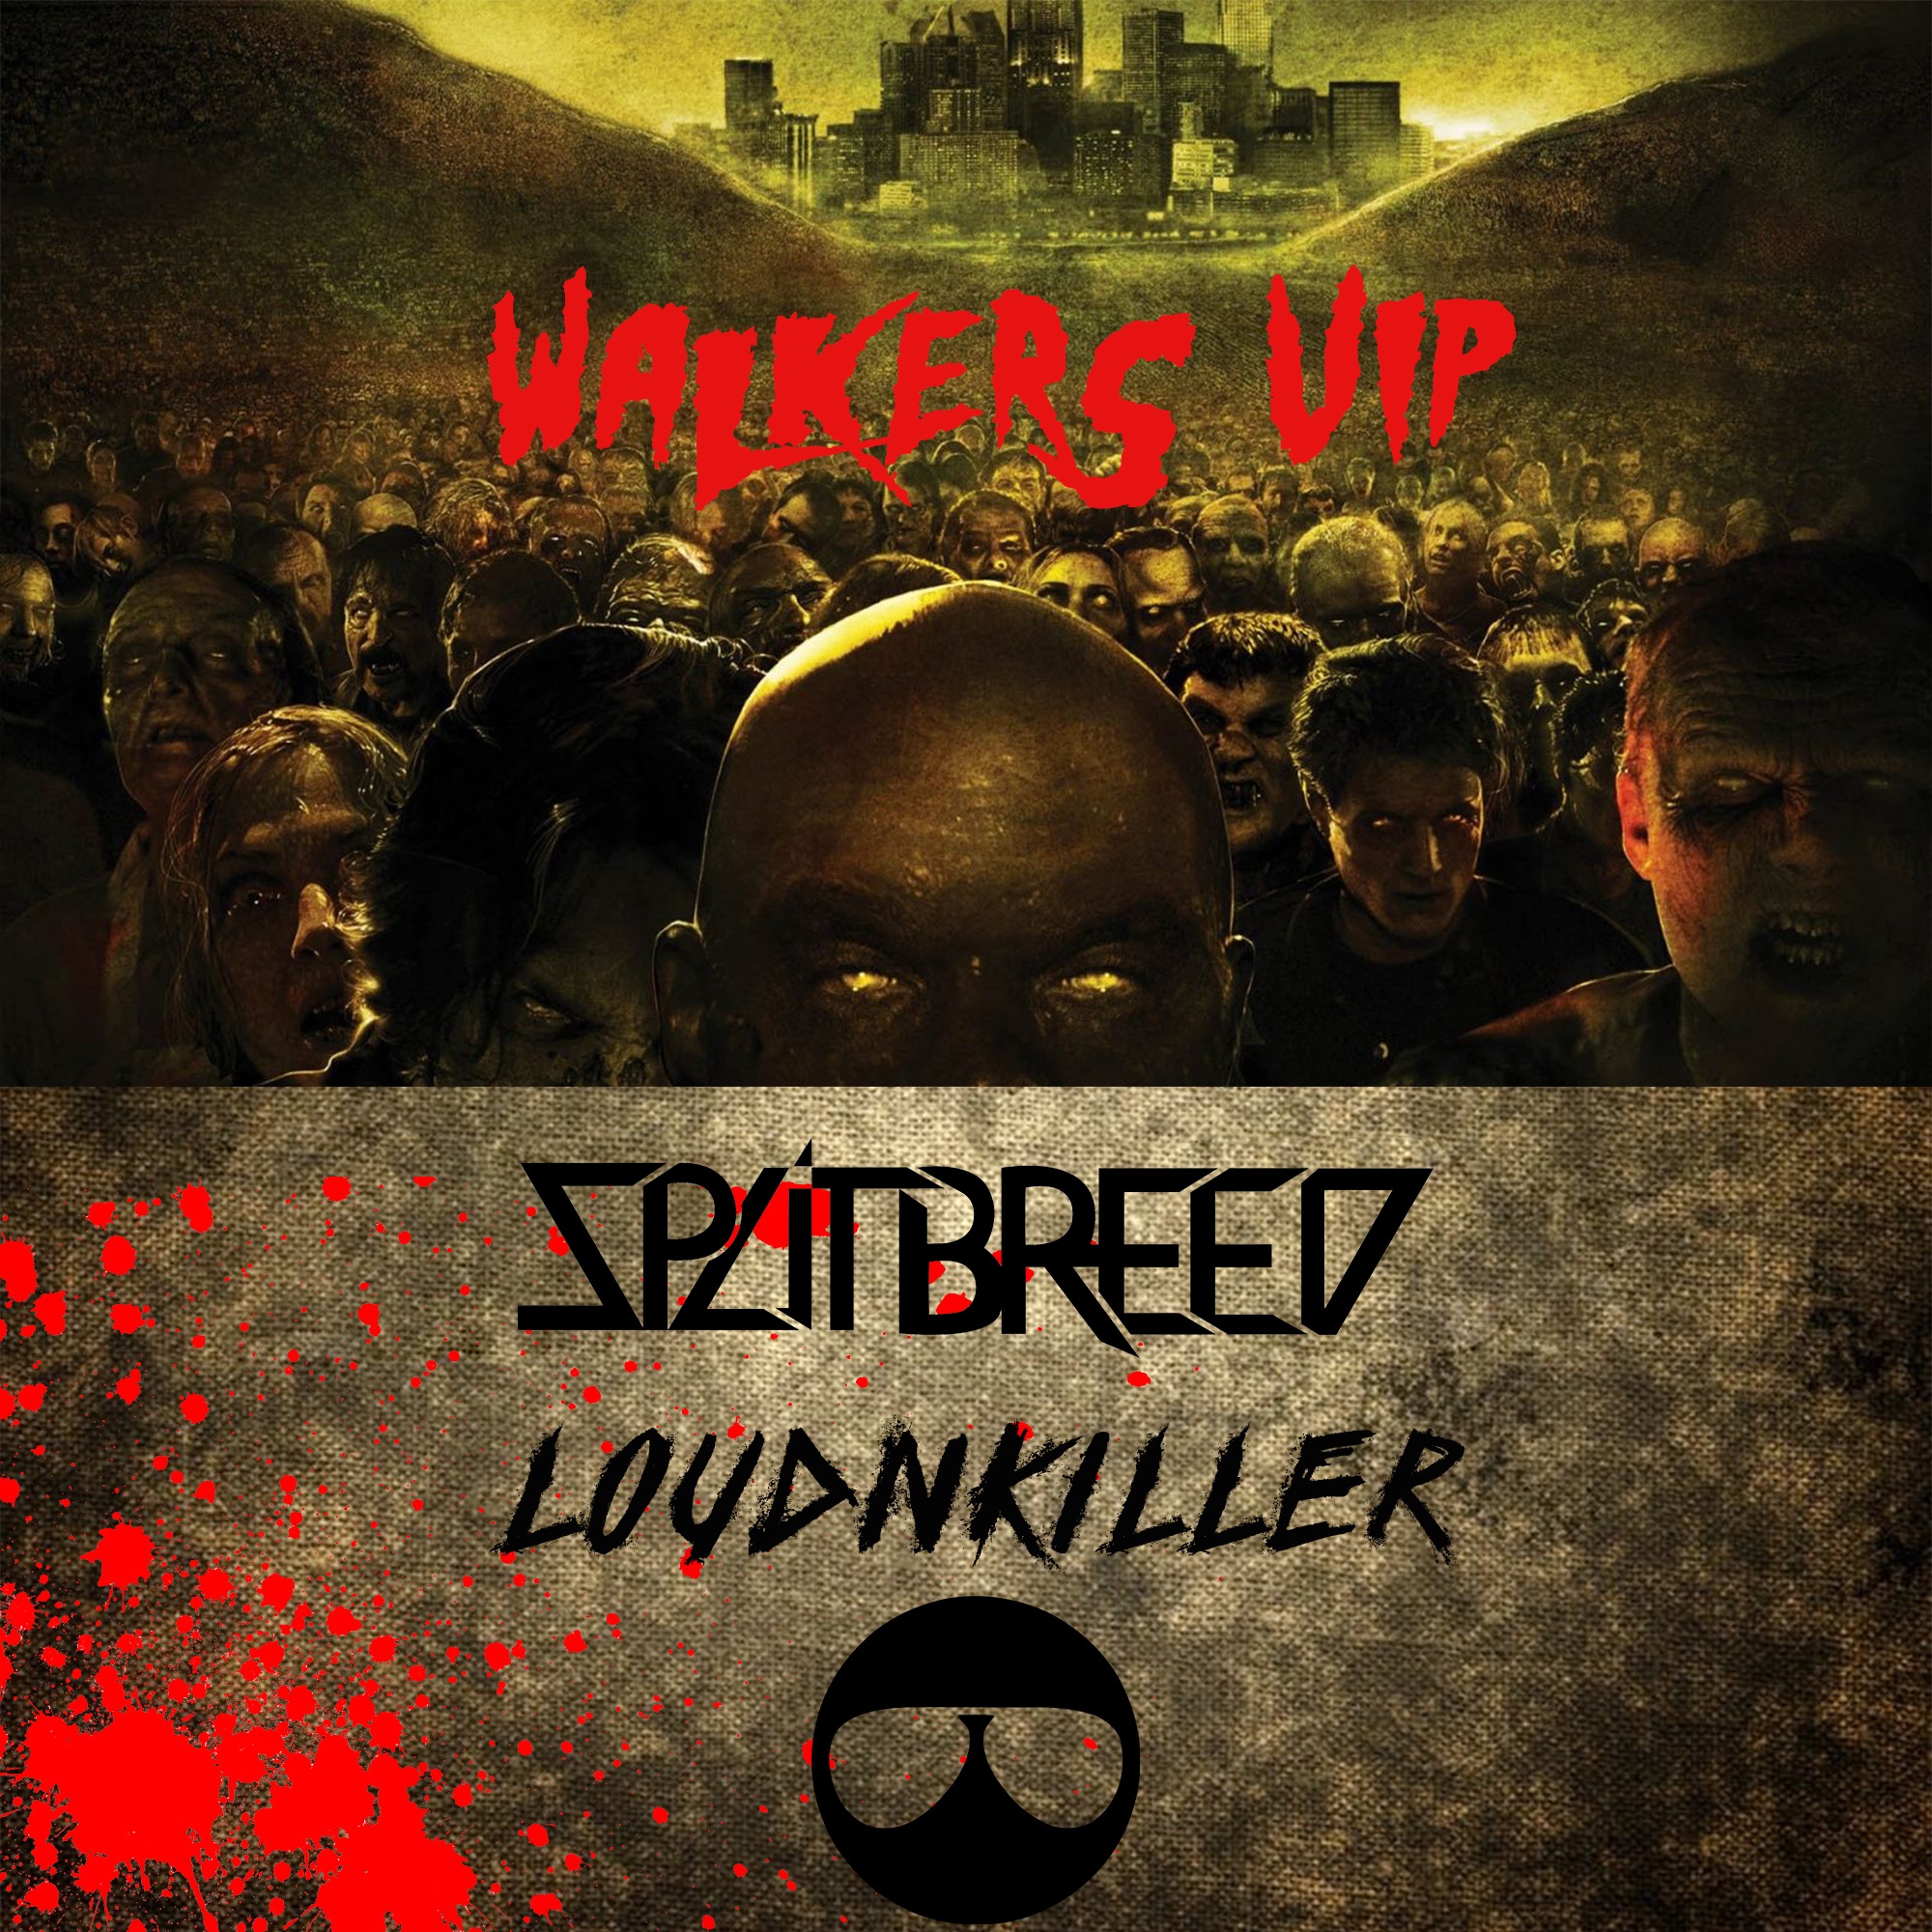 Download SPLITBREED & LOUD N' KILLER - WALKERS (VIP)